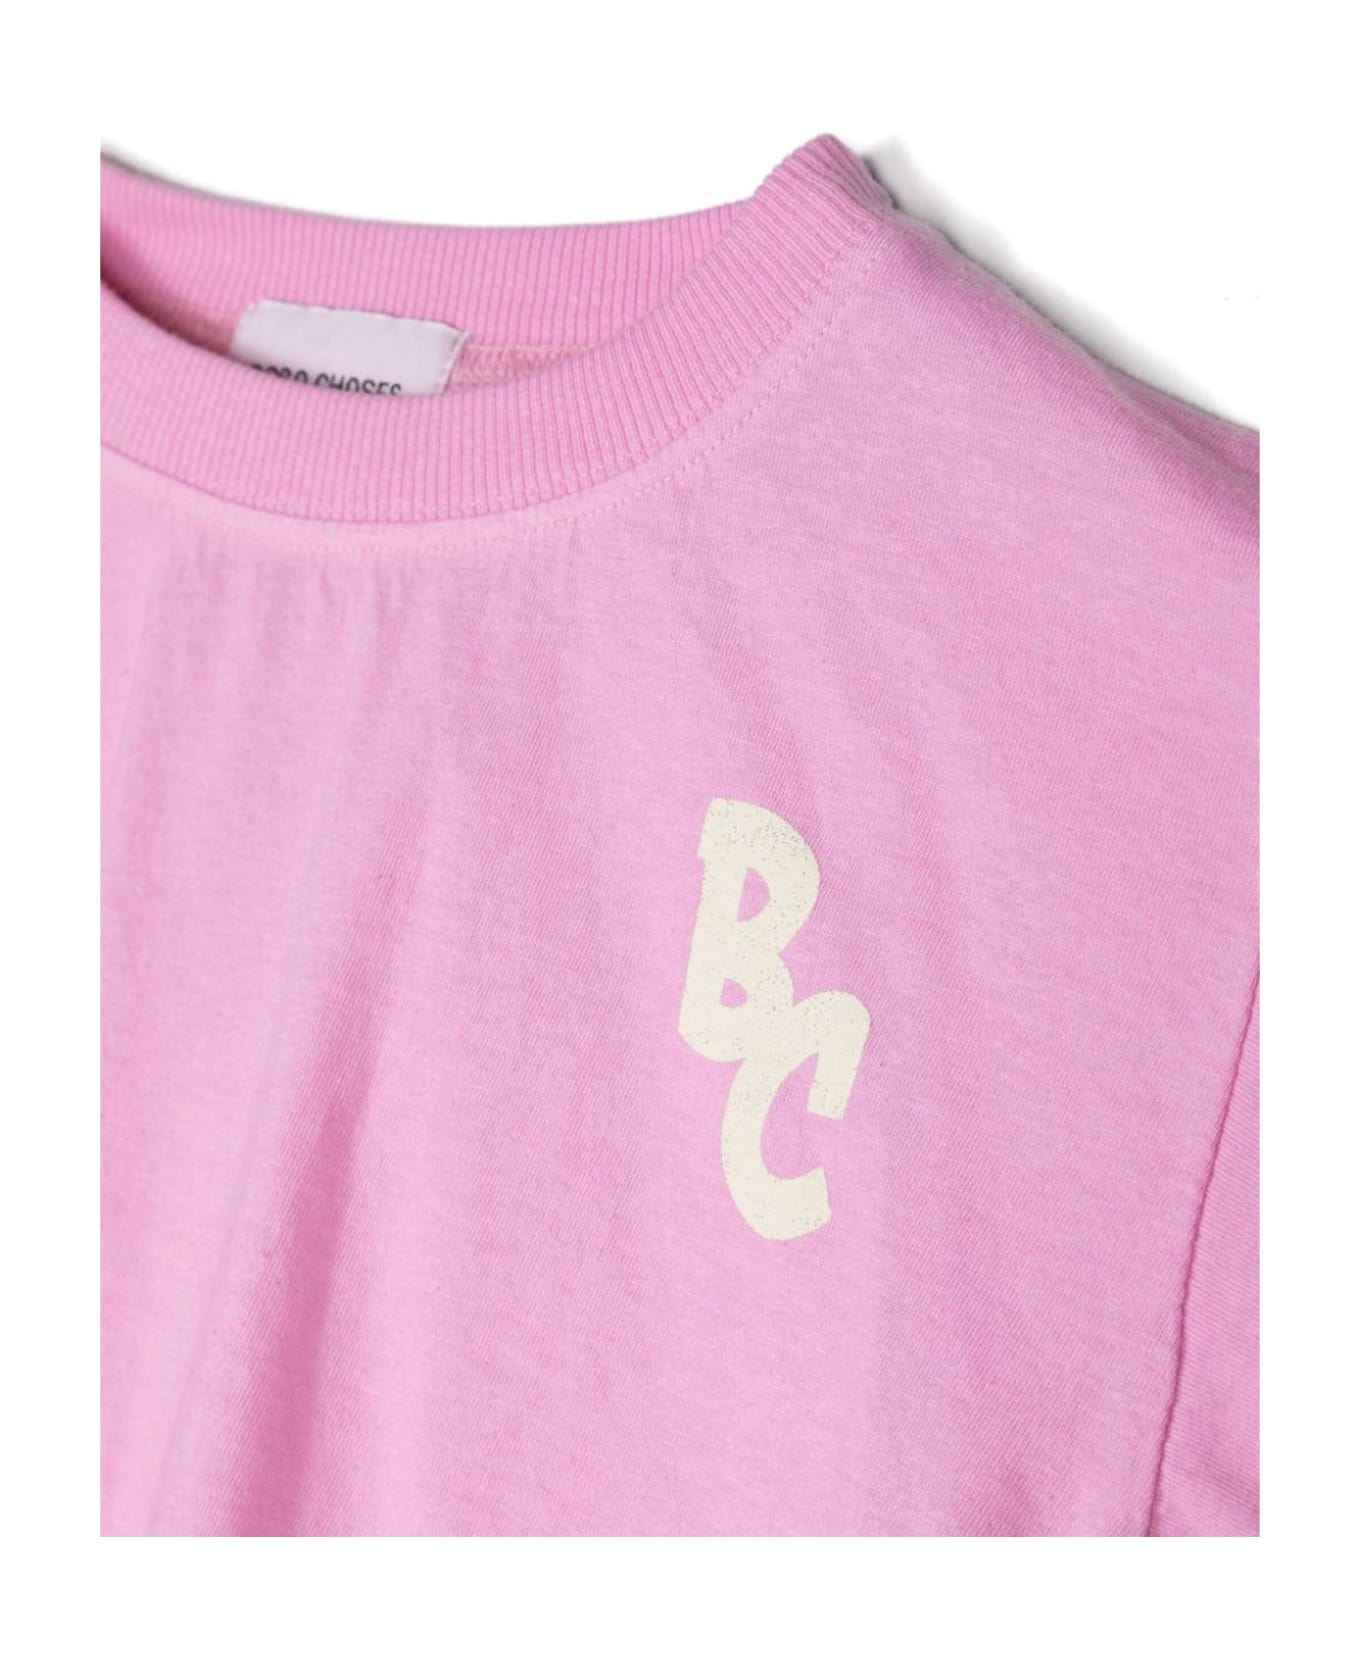 Bobo Choses T-shirts And Polos Pink - Pink